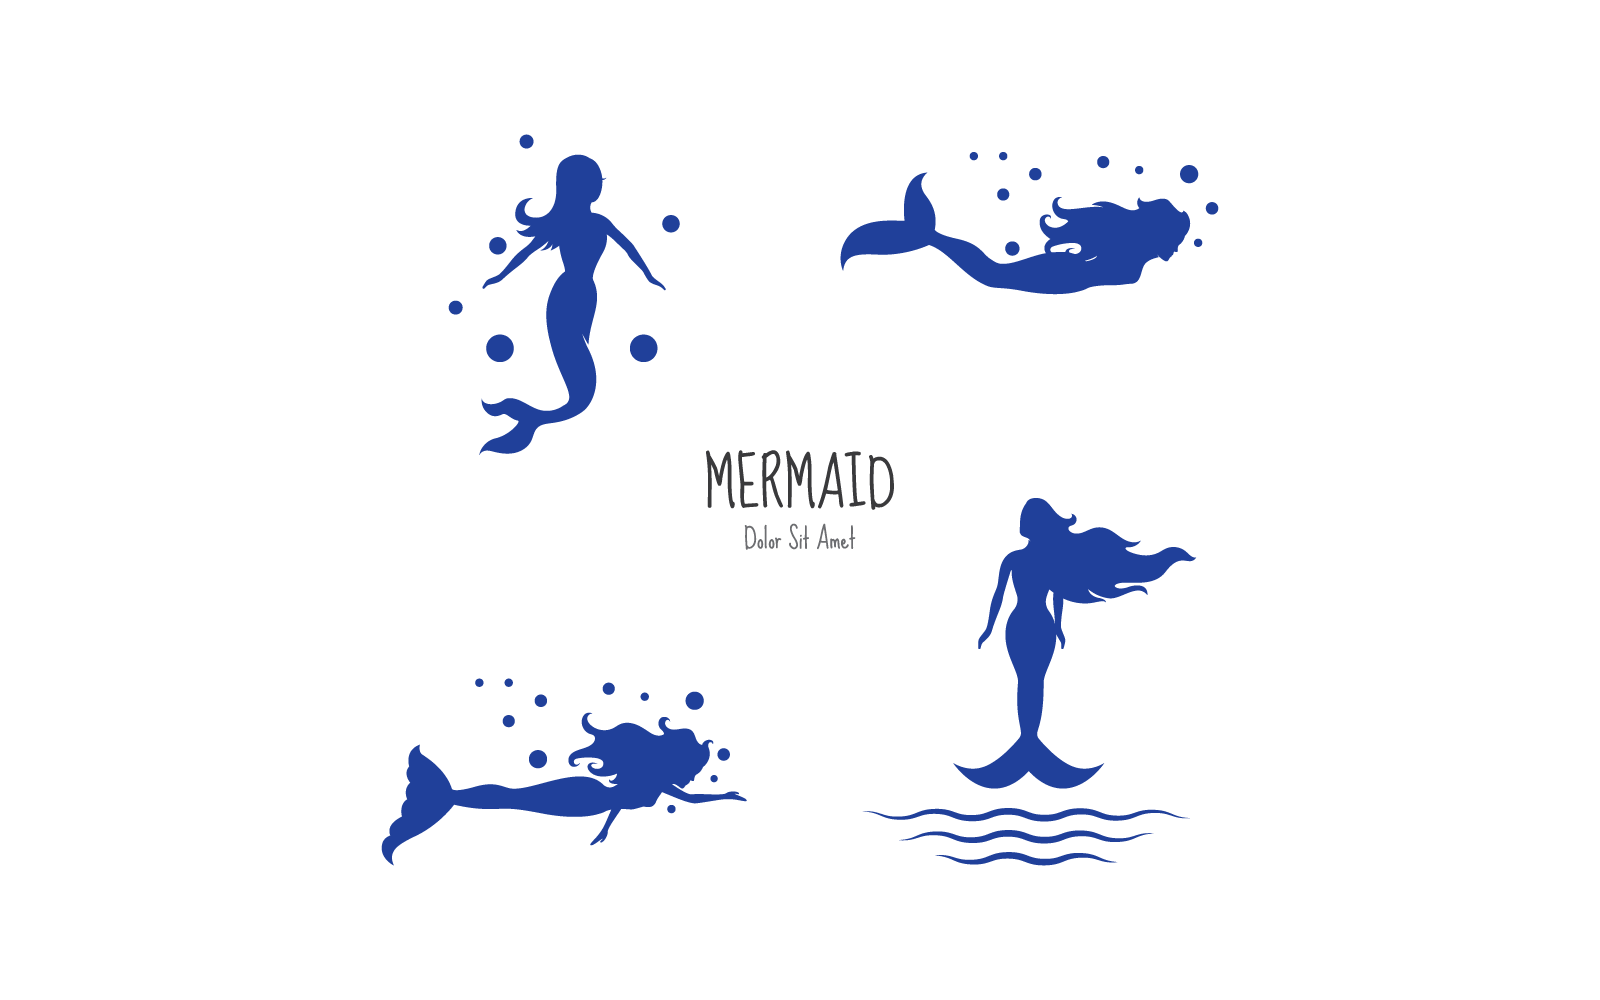 Mermaid design logo illustration vector